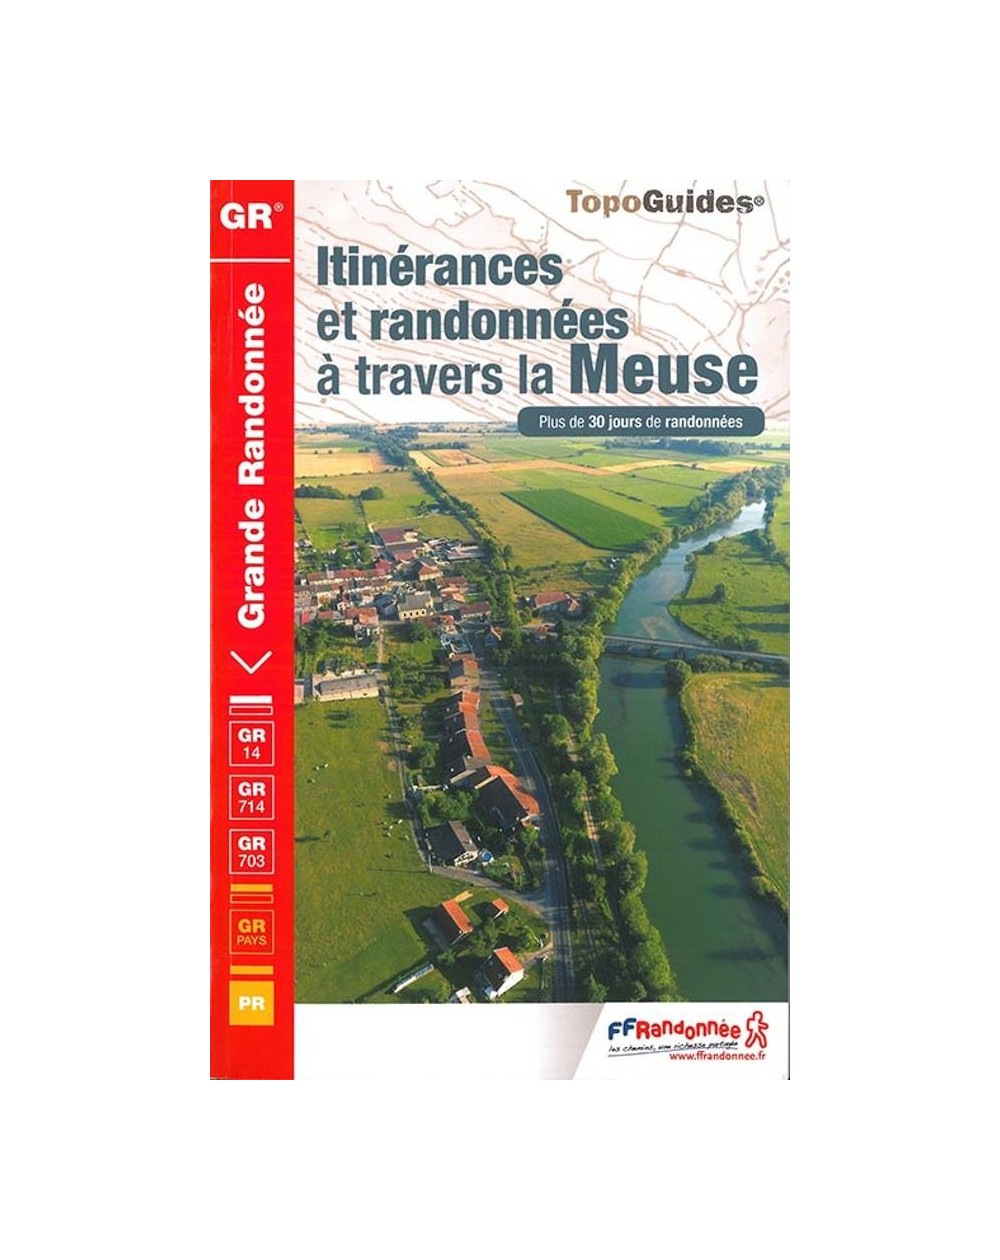 Itinerance et randonnées dans la Meuse | Topoguide FFRP